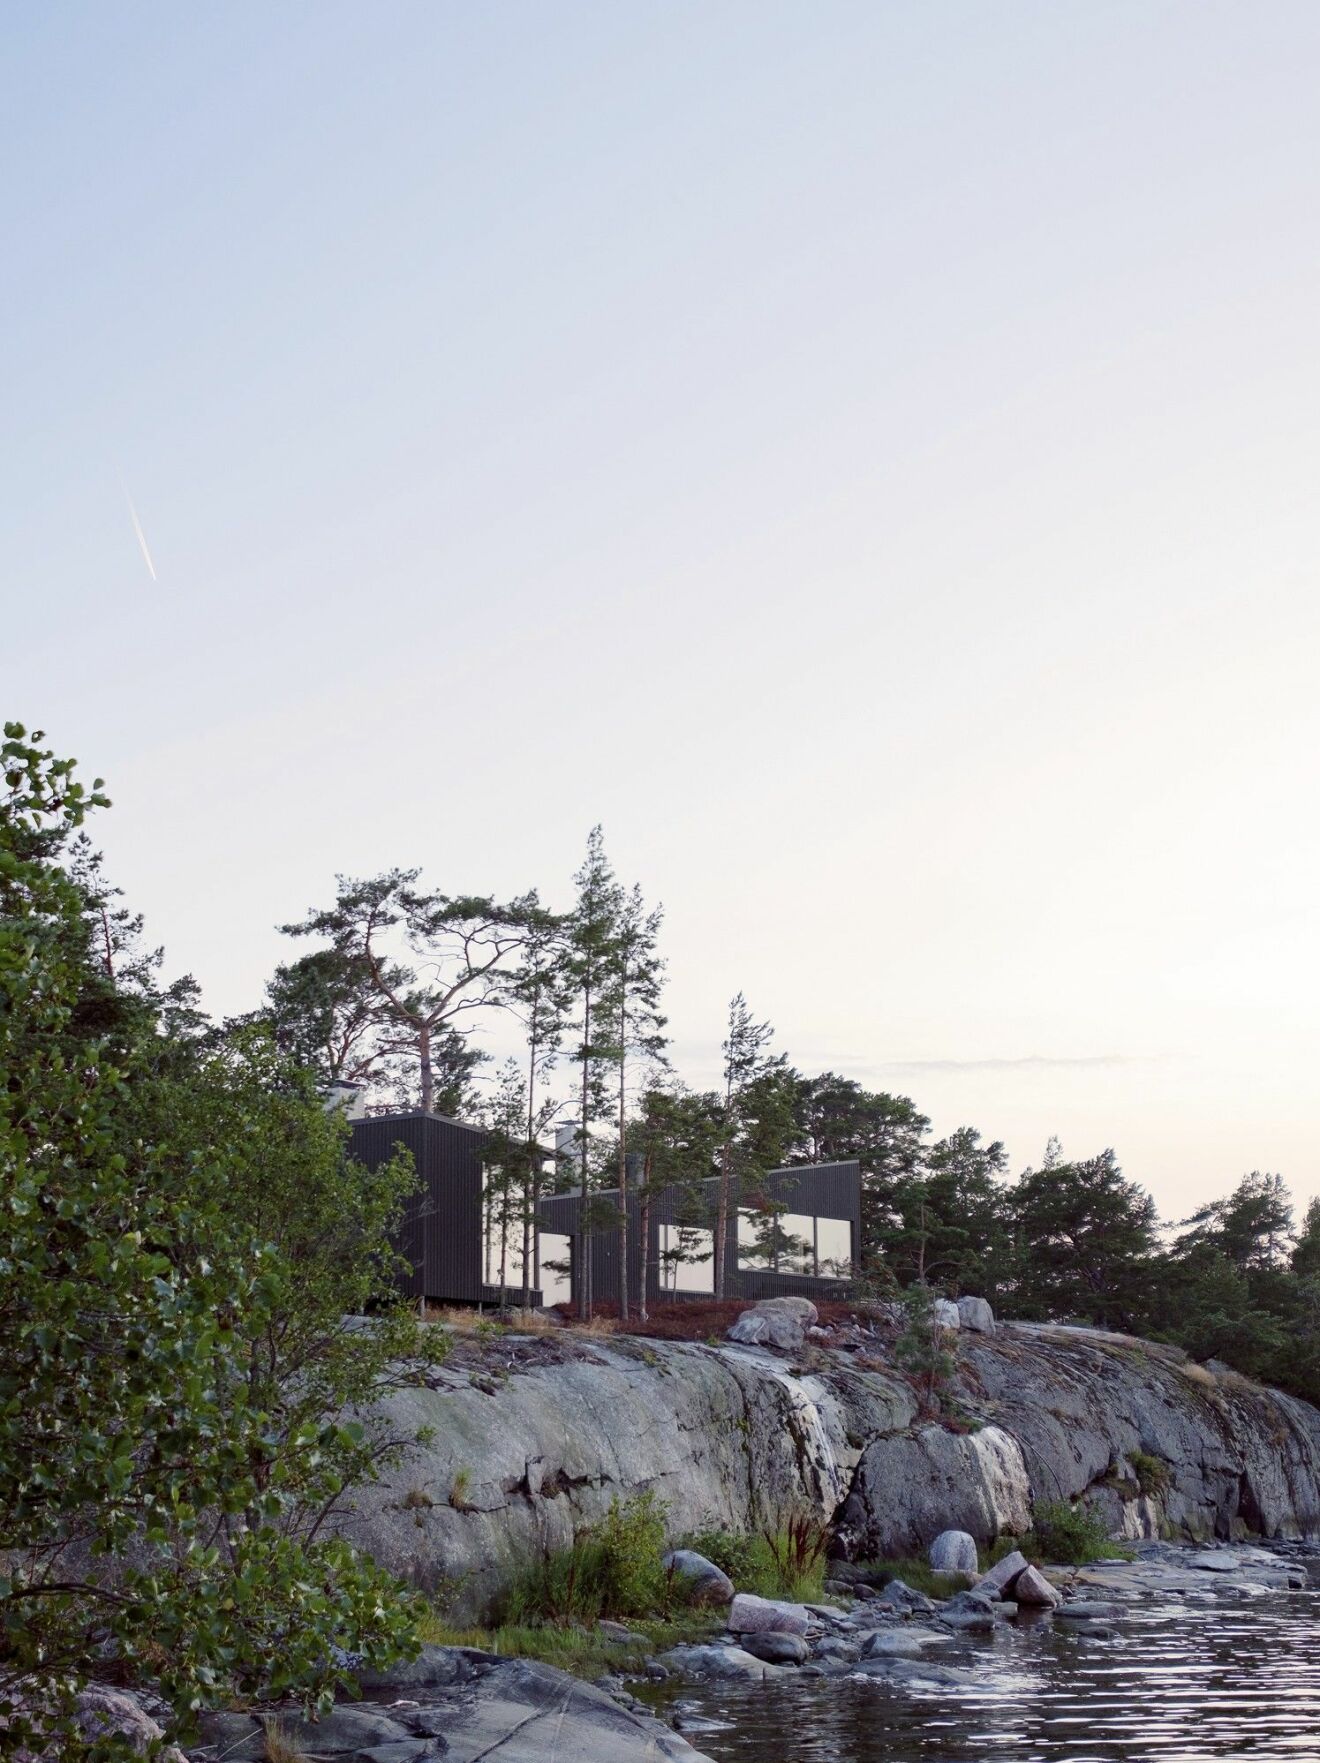 Hus byggt på en ö långt ut i Åbos skärgård.